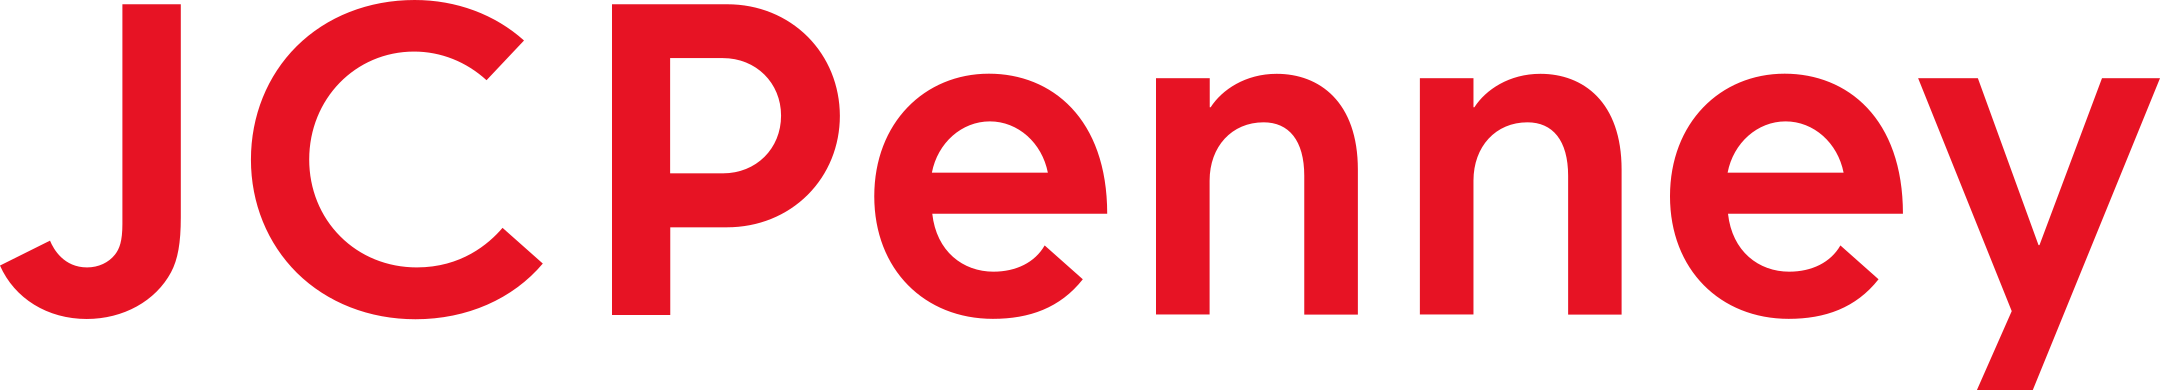 jcpenney logo 1 - JCPenney Logo